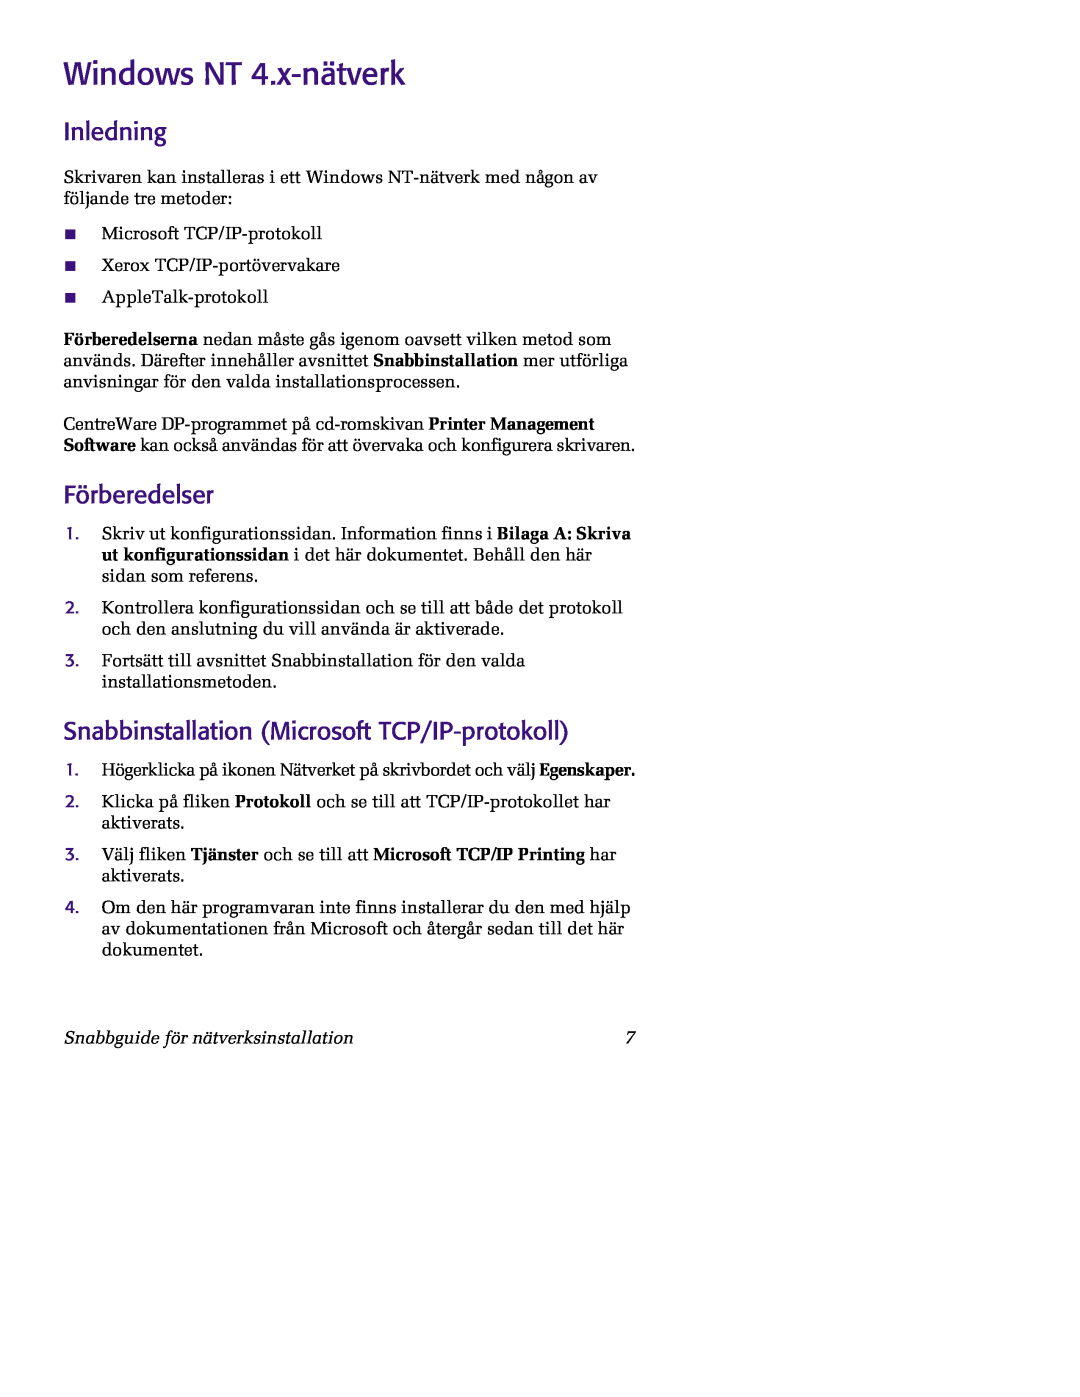 Xerox 5400 manual Windows NT 4.x-nätverk, Inledning, Förberedelser, Snabbinstallation Microsoft TCP/IP-protokoll 